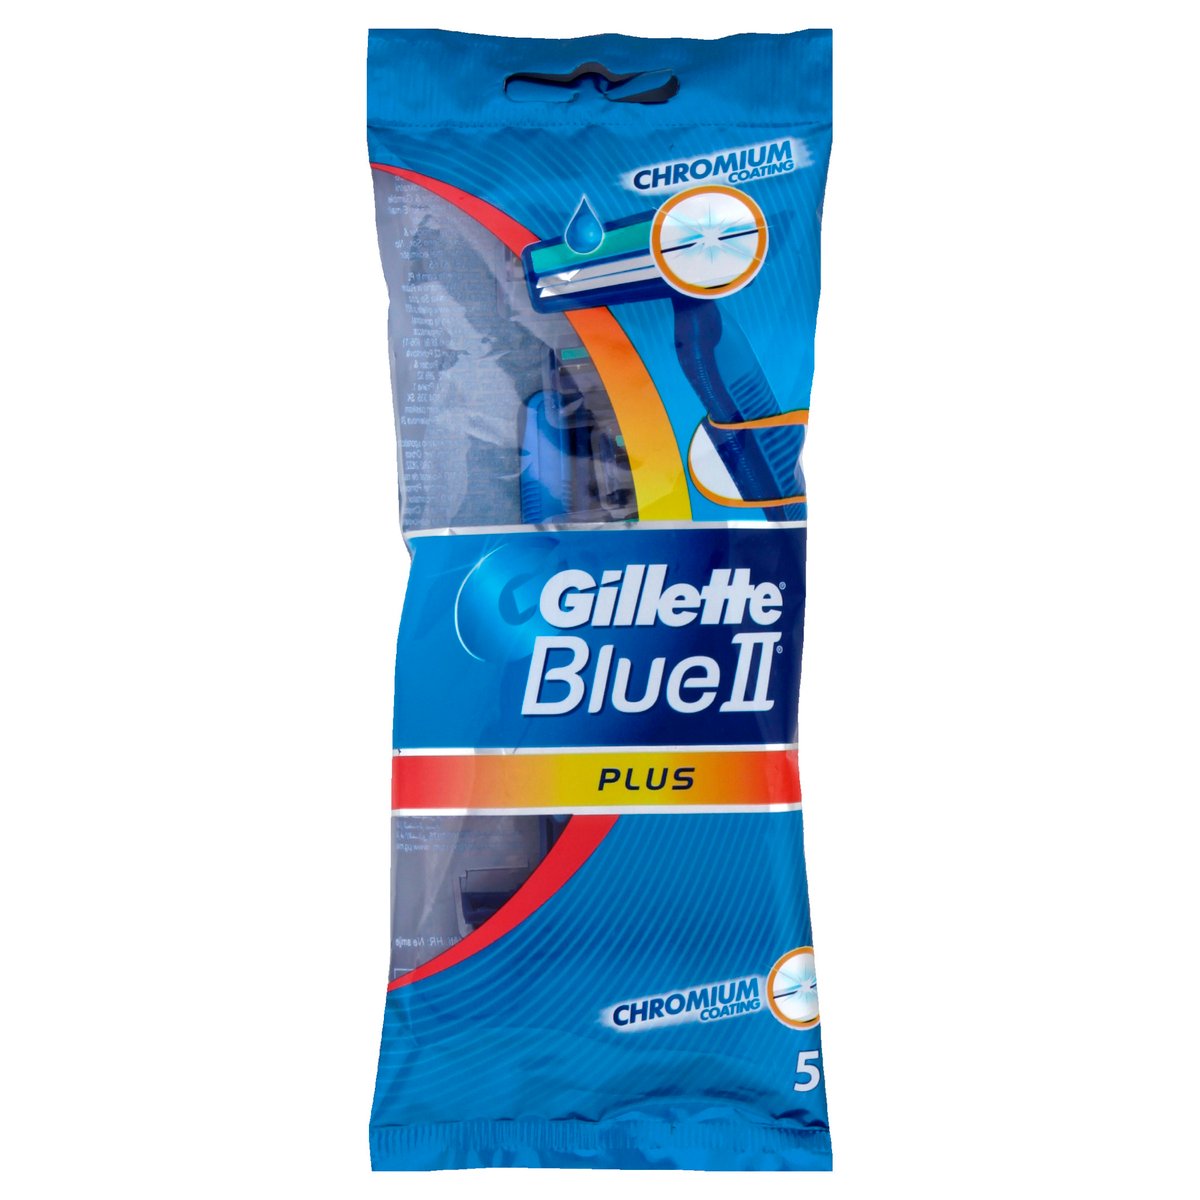 Gillette Blue II Plus Men’s Disposable Razors 5 pcs